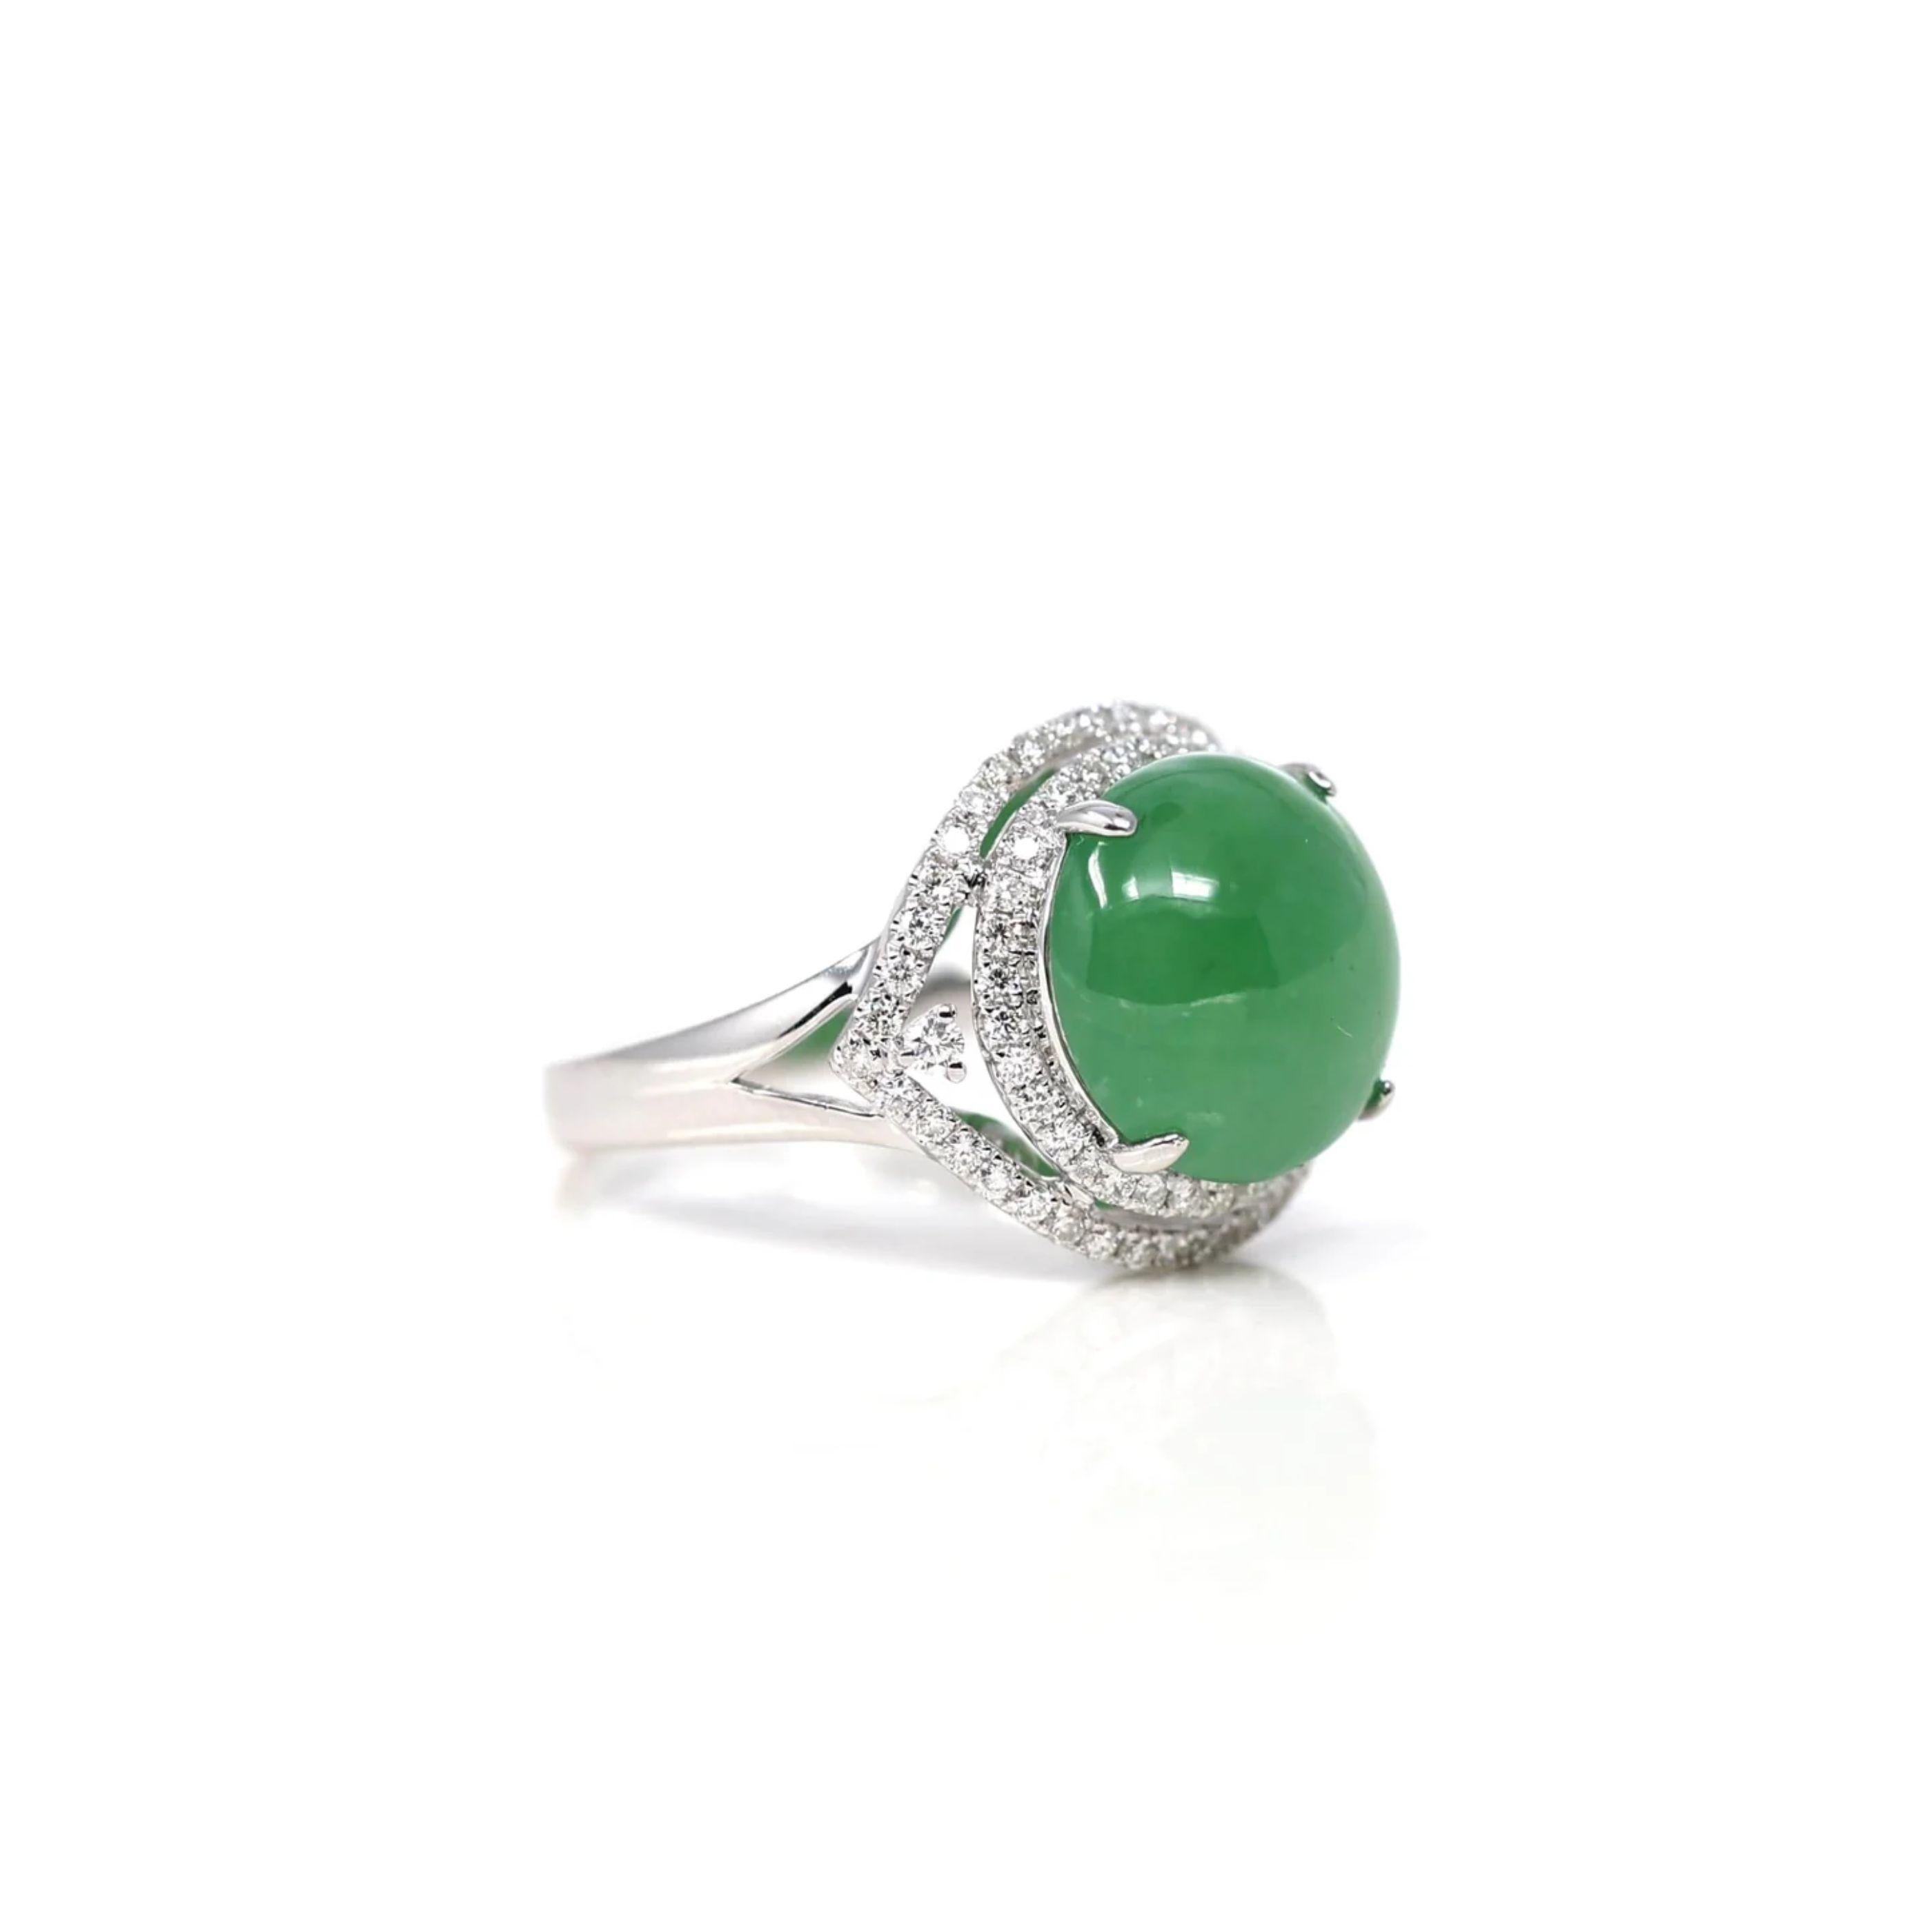 * ORIGINAL DESIGN --- Inspiriert von der natürlichen Schönheit des echten burmesischen Imperial Green Jadeit, ist die satte, schöne apfelgrüne Farbe auf keinem anderen Stein zu finden. Dieser einmalige Verlobungsring verbindet die natürliche